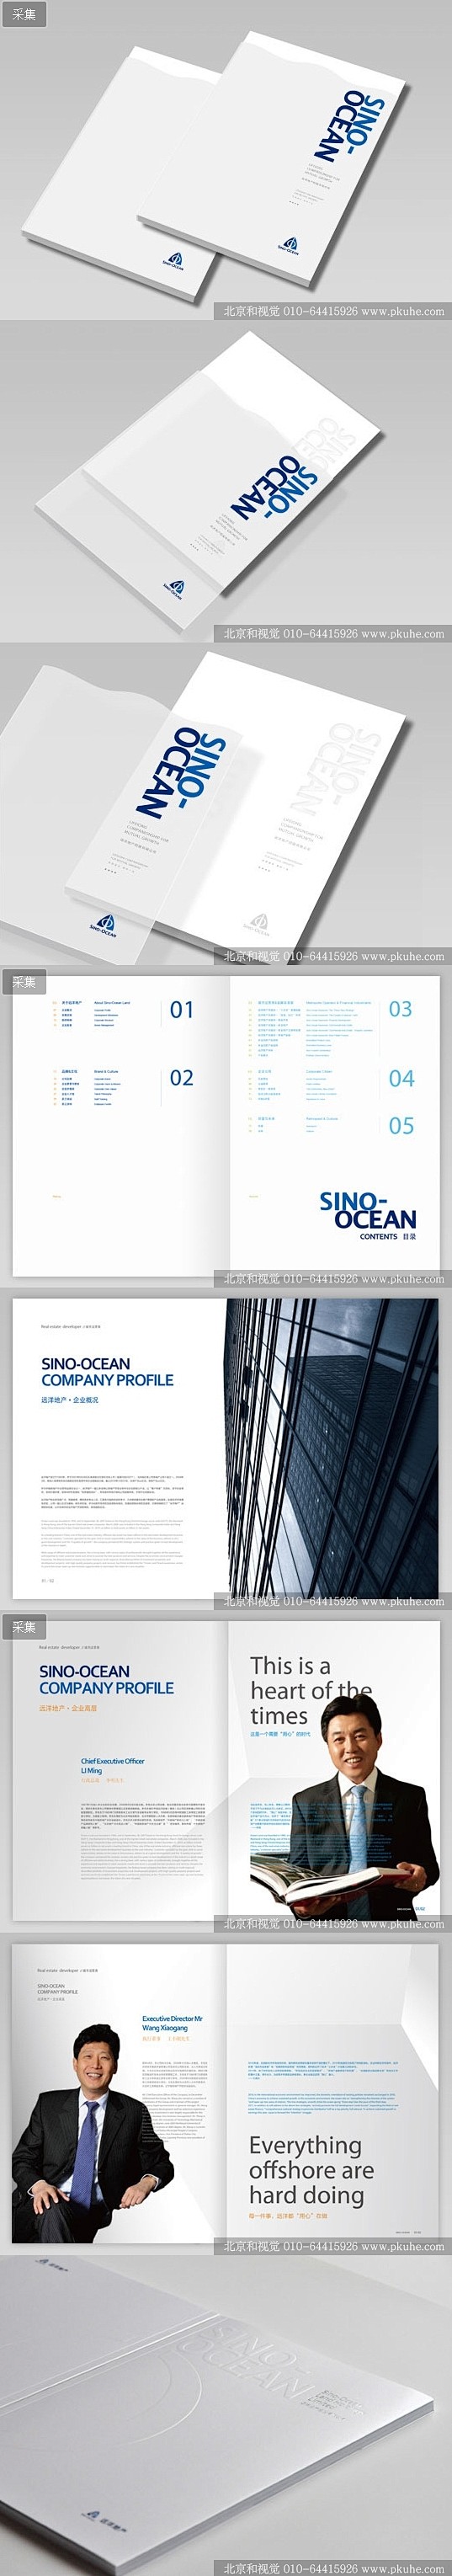 远洋地产企业形象系列画册设计画册设计,宣...